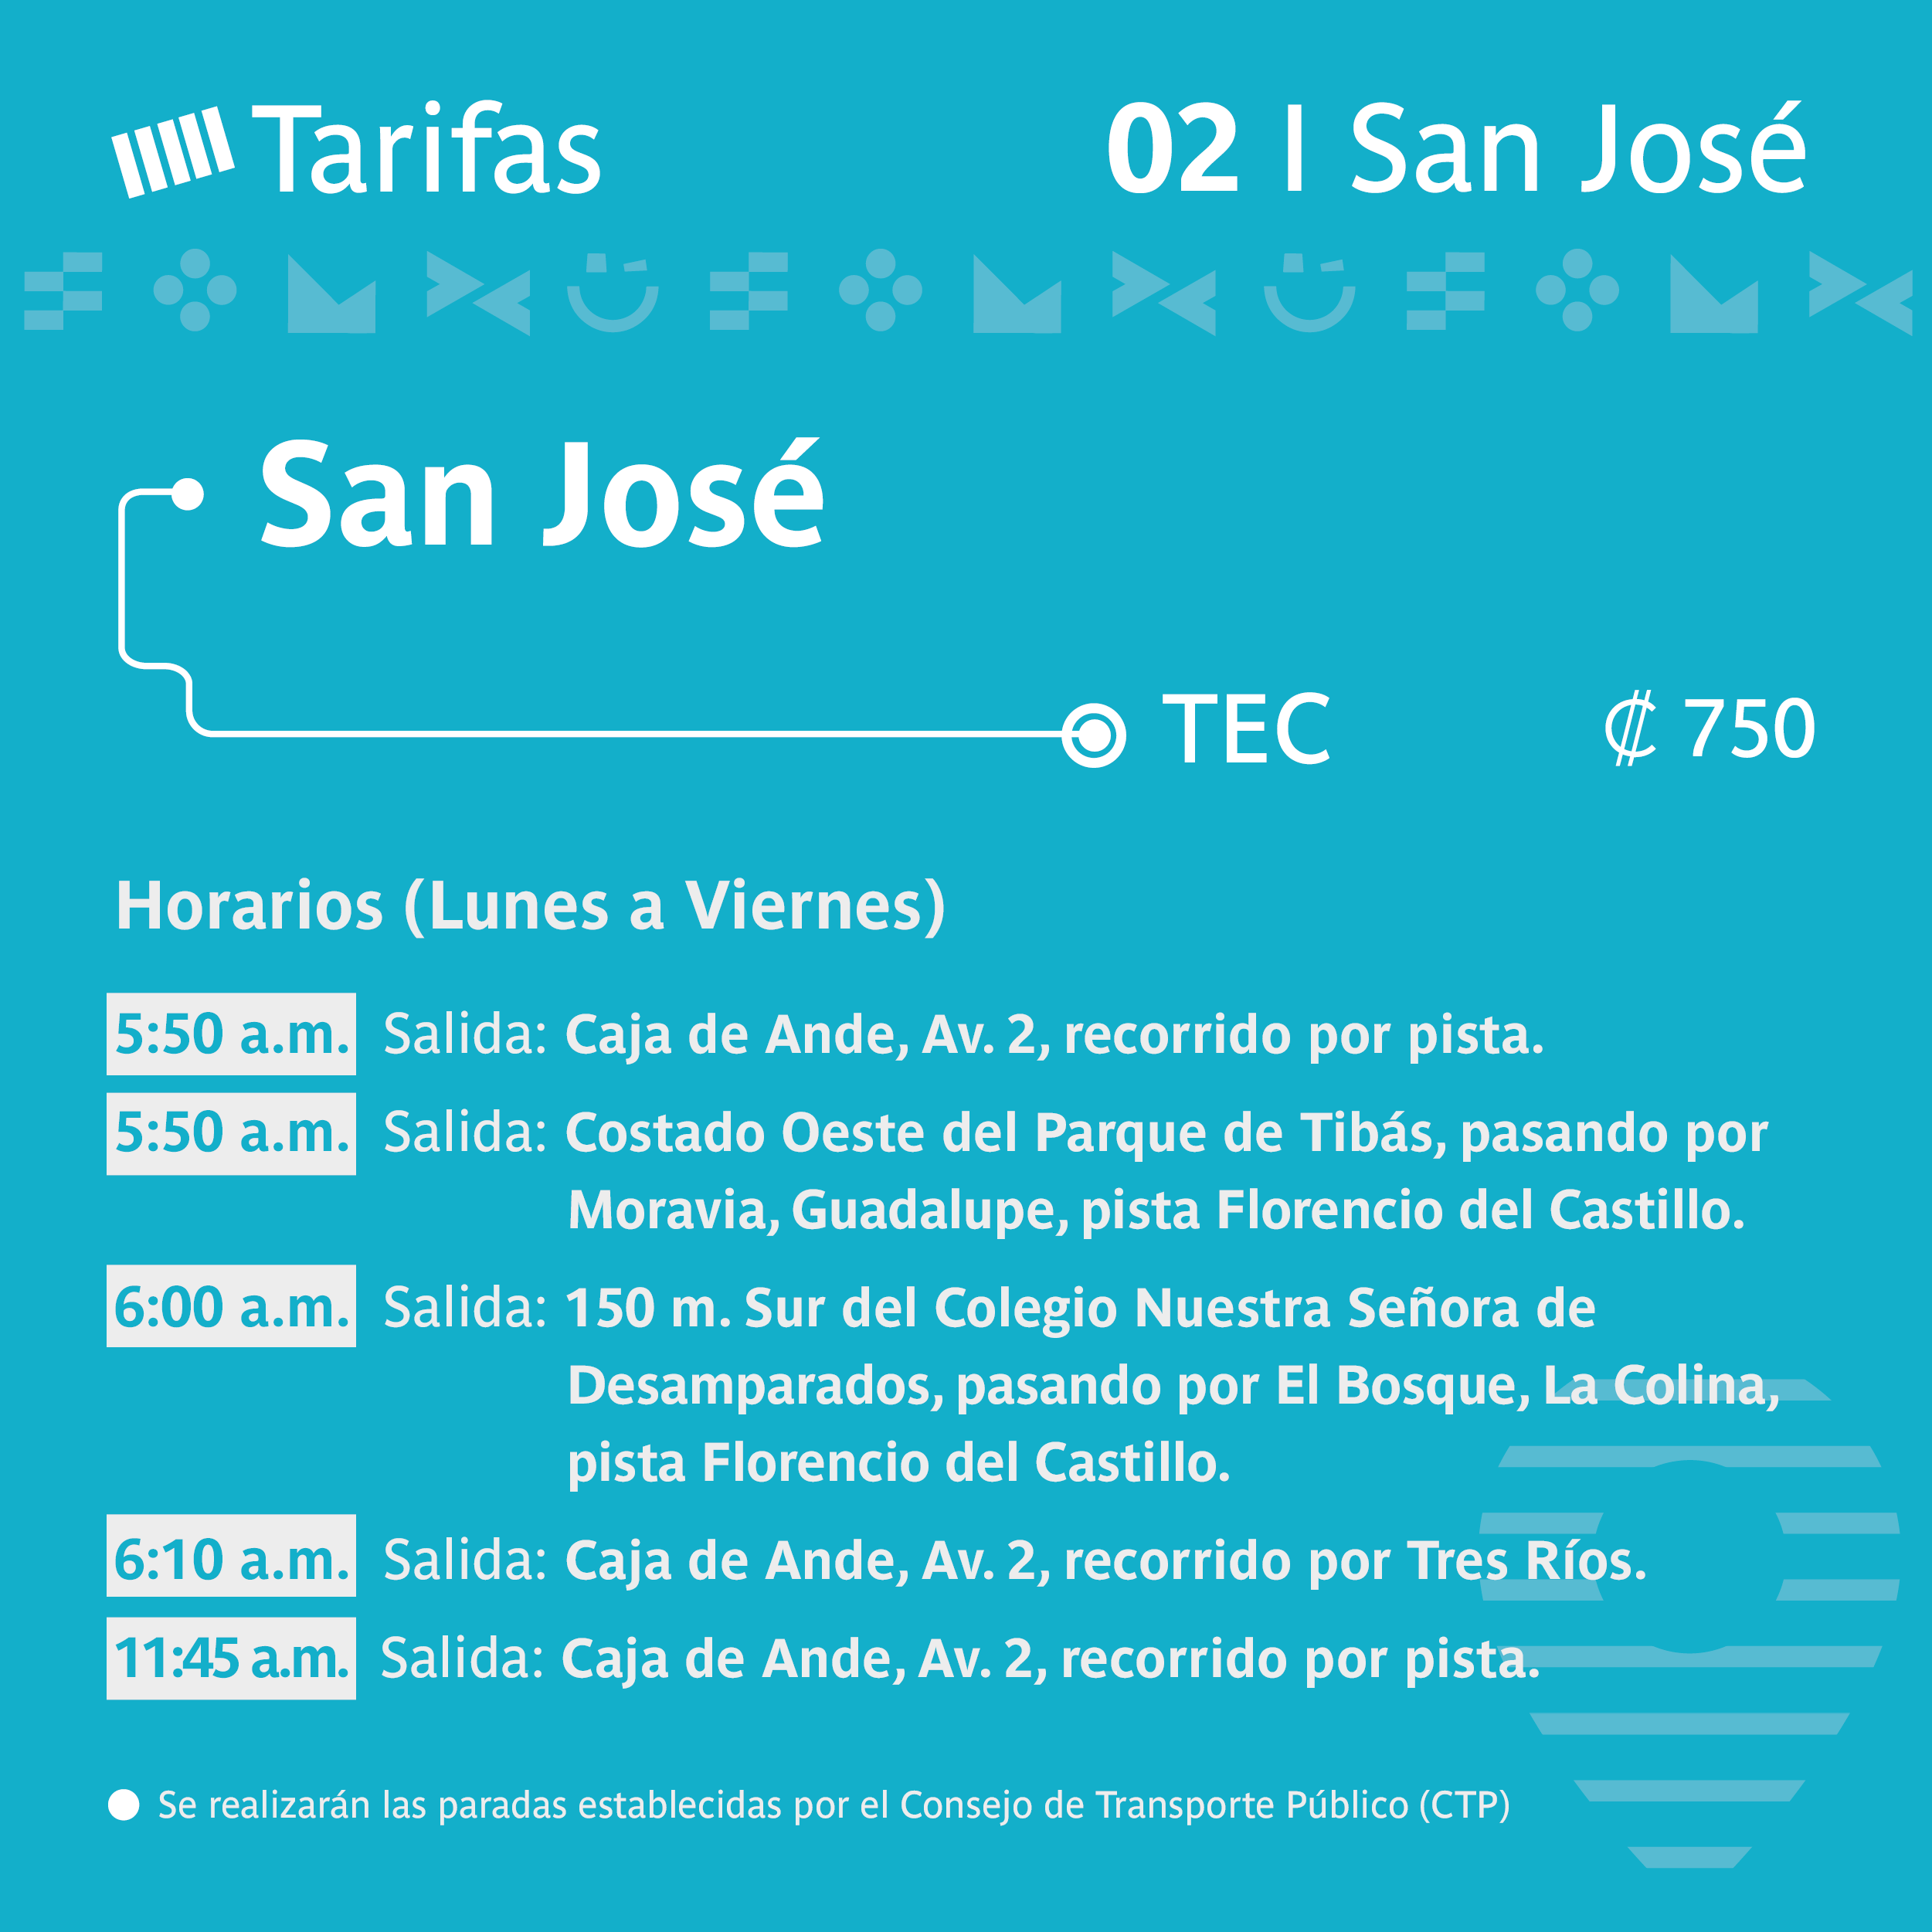 San José - TEC